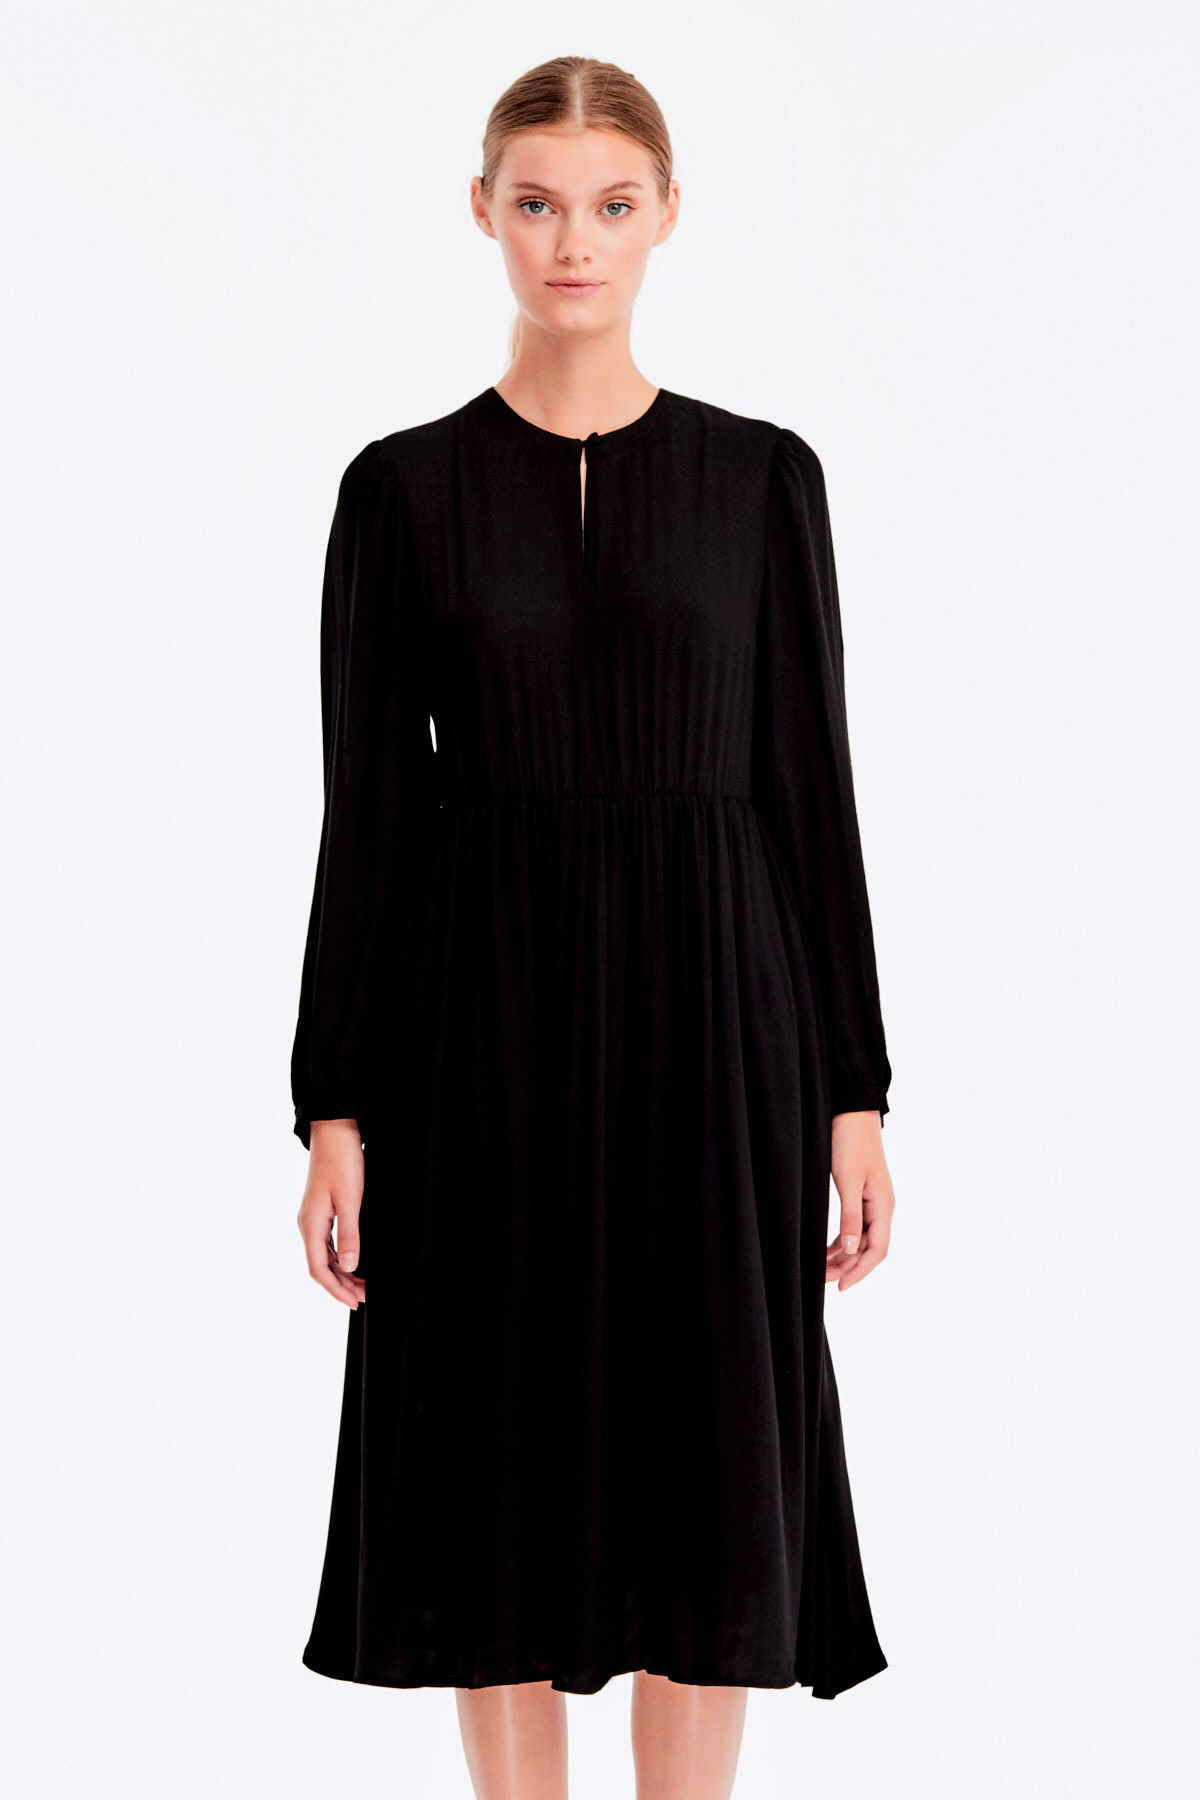 Black dress with a keyhole, photo 1